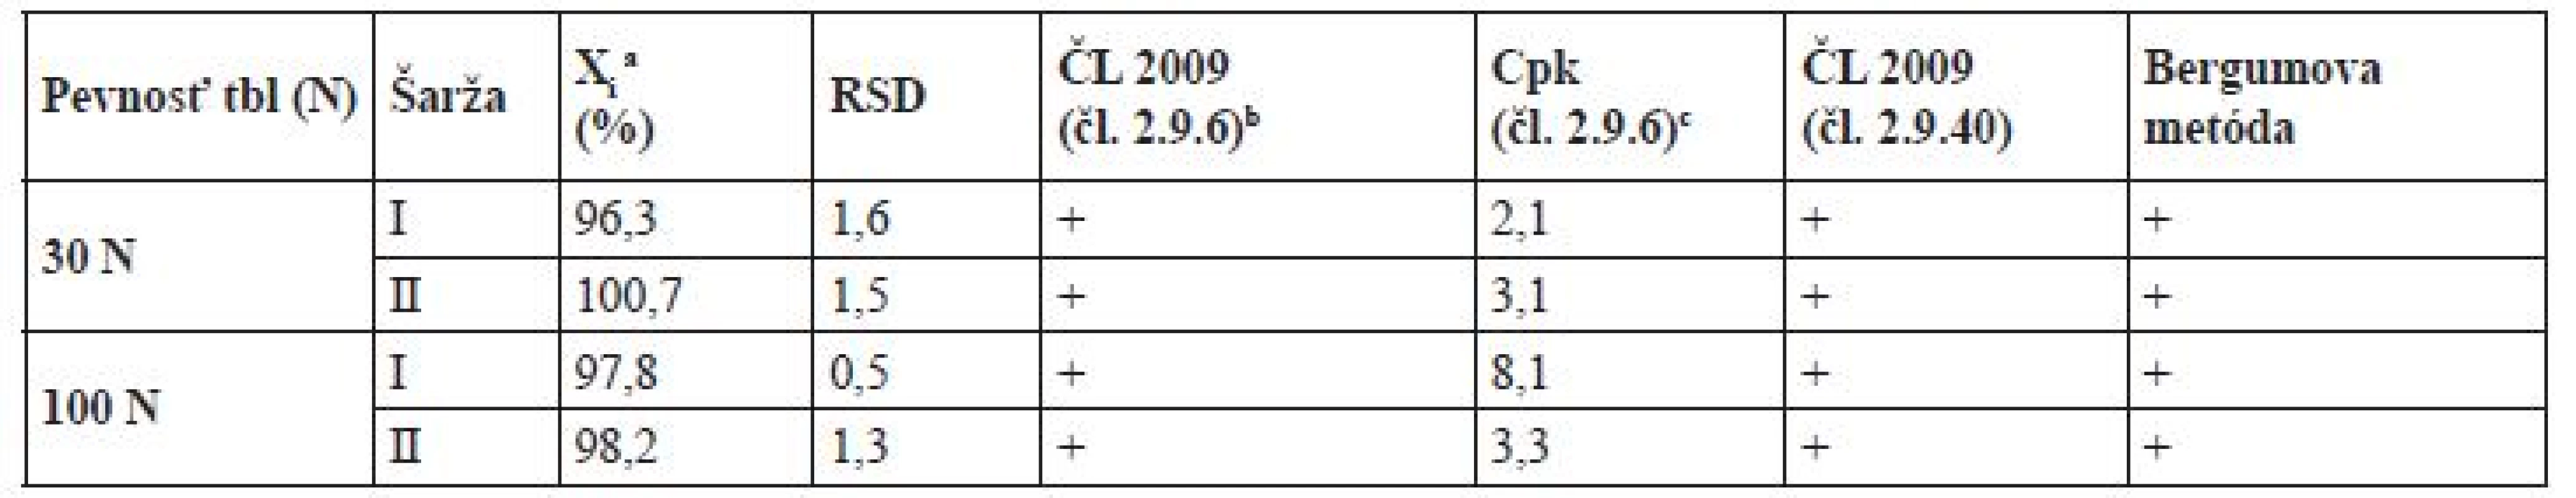 Hodnotenie obsahovej rovnorodosti tabliet s teoretickým obsahom 10 mg warfarínu